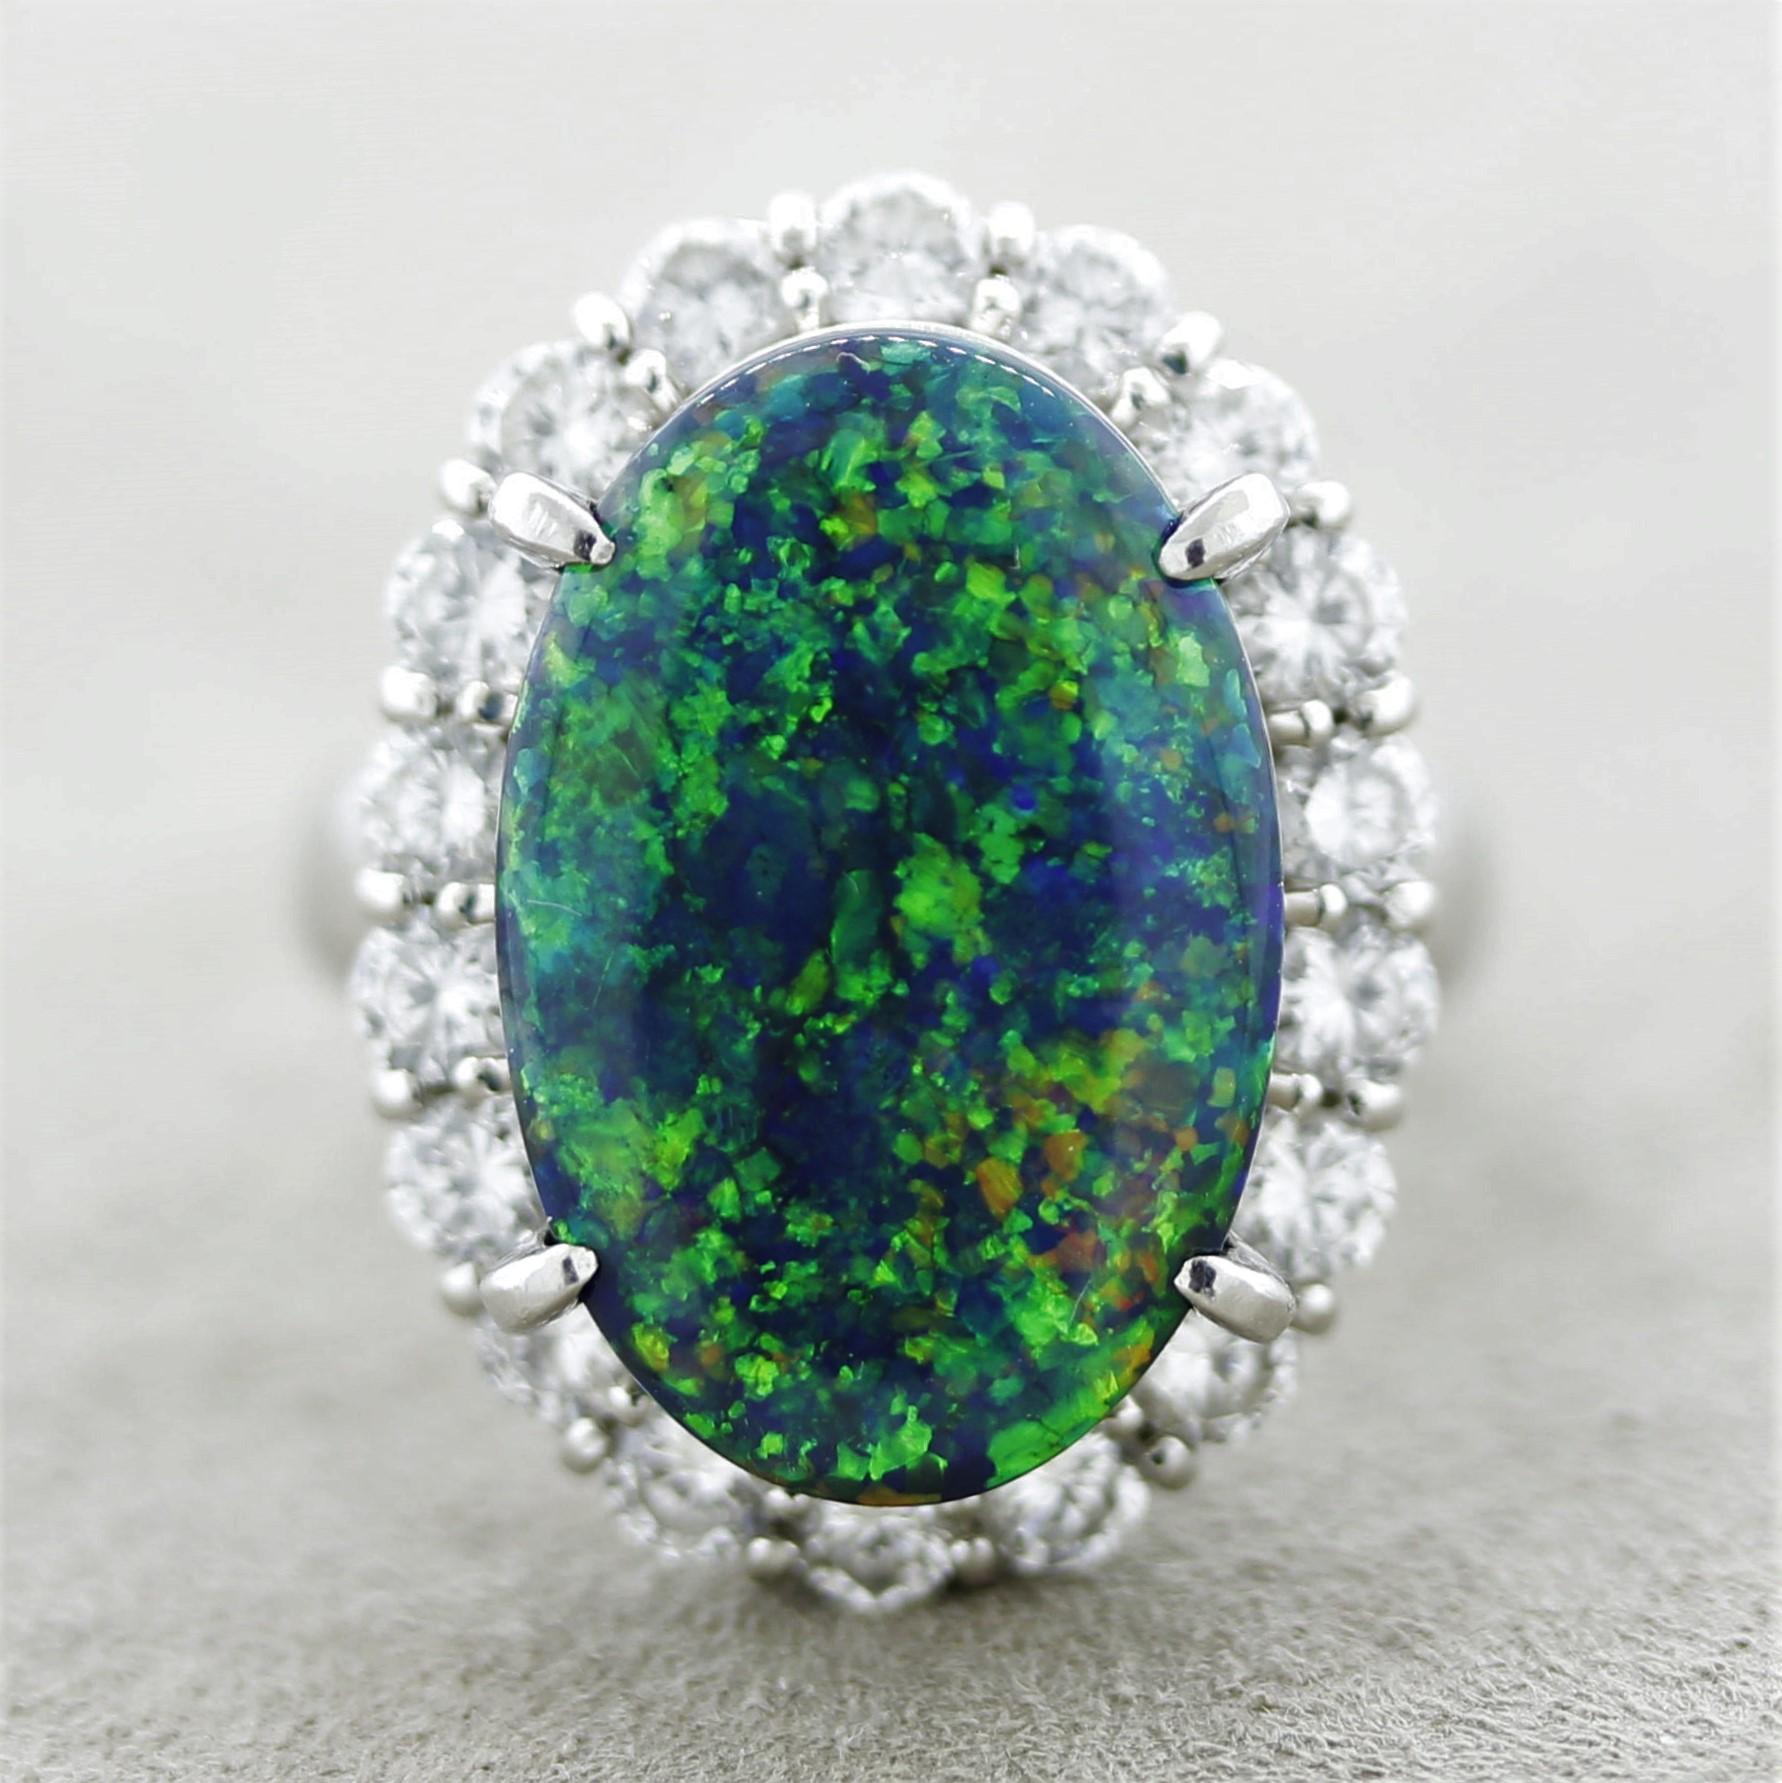 Une superbe opale noire gemme provenant de Lightning Ridge, Australie. Elle pèse 7,79 carats et présente un excellent jeu de couleurs et une luminosité fantastique. Des éclairs intenses de vert, de bleu, d'orange et de jaune dansent sur la pierre.